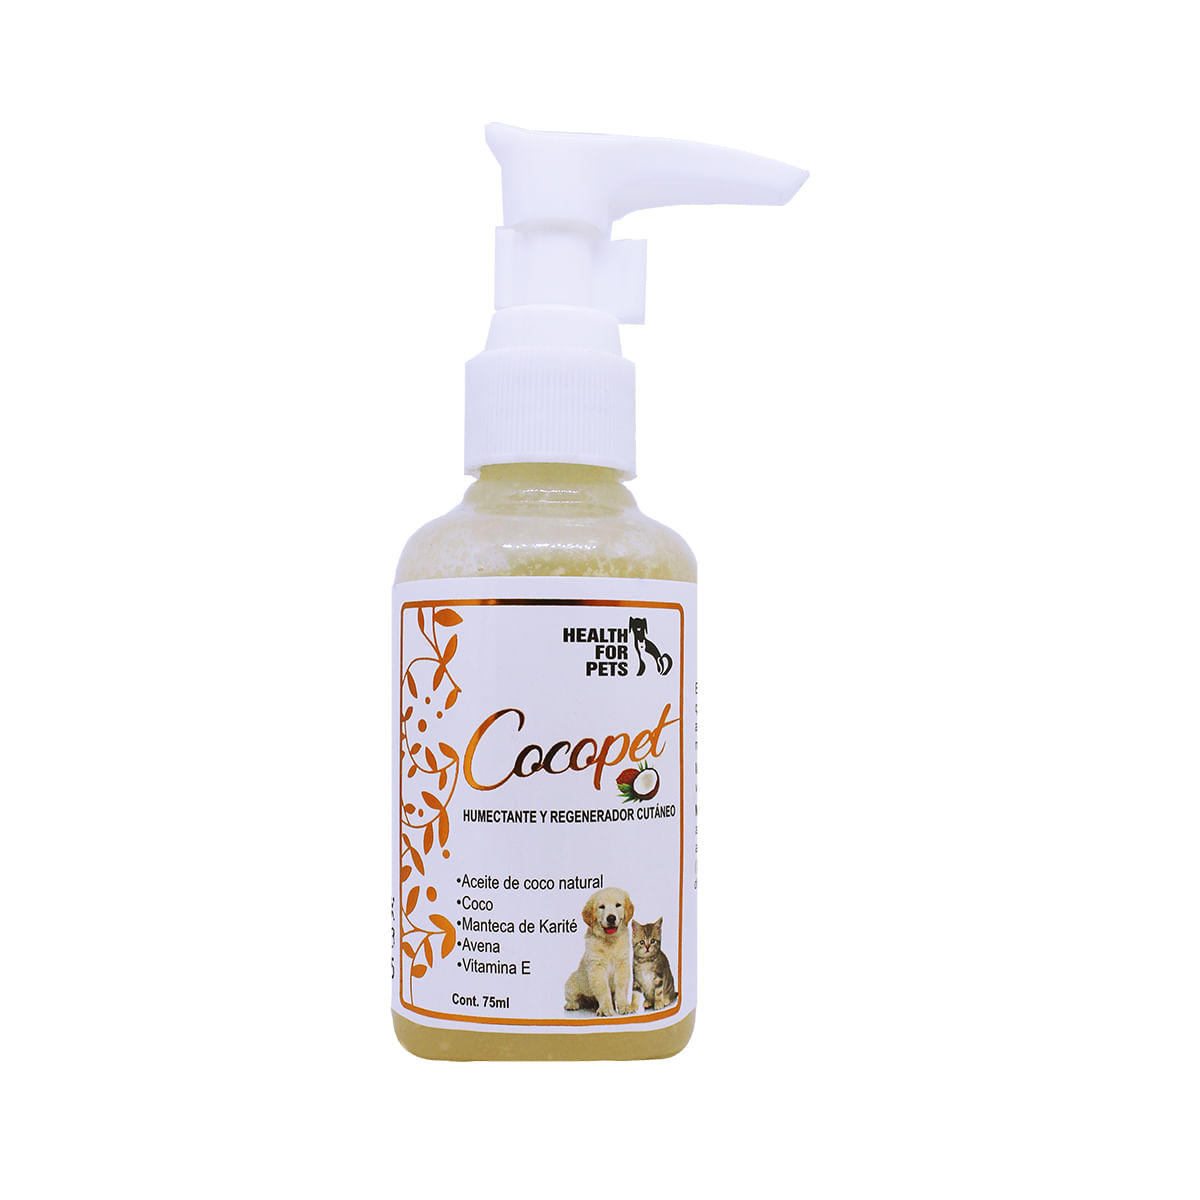 Humectador de Huellas para Mascotas  Health For Pets  Cocopet  Contiene Aceite de Coco Natural 75 ml